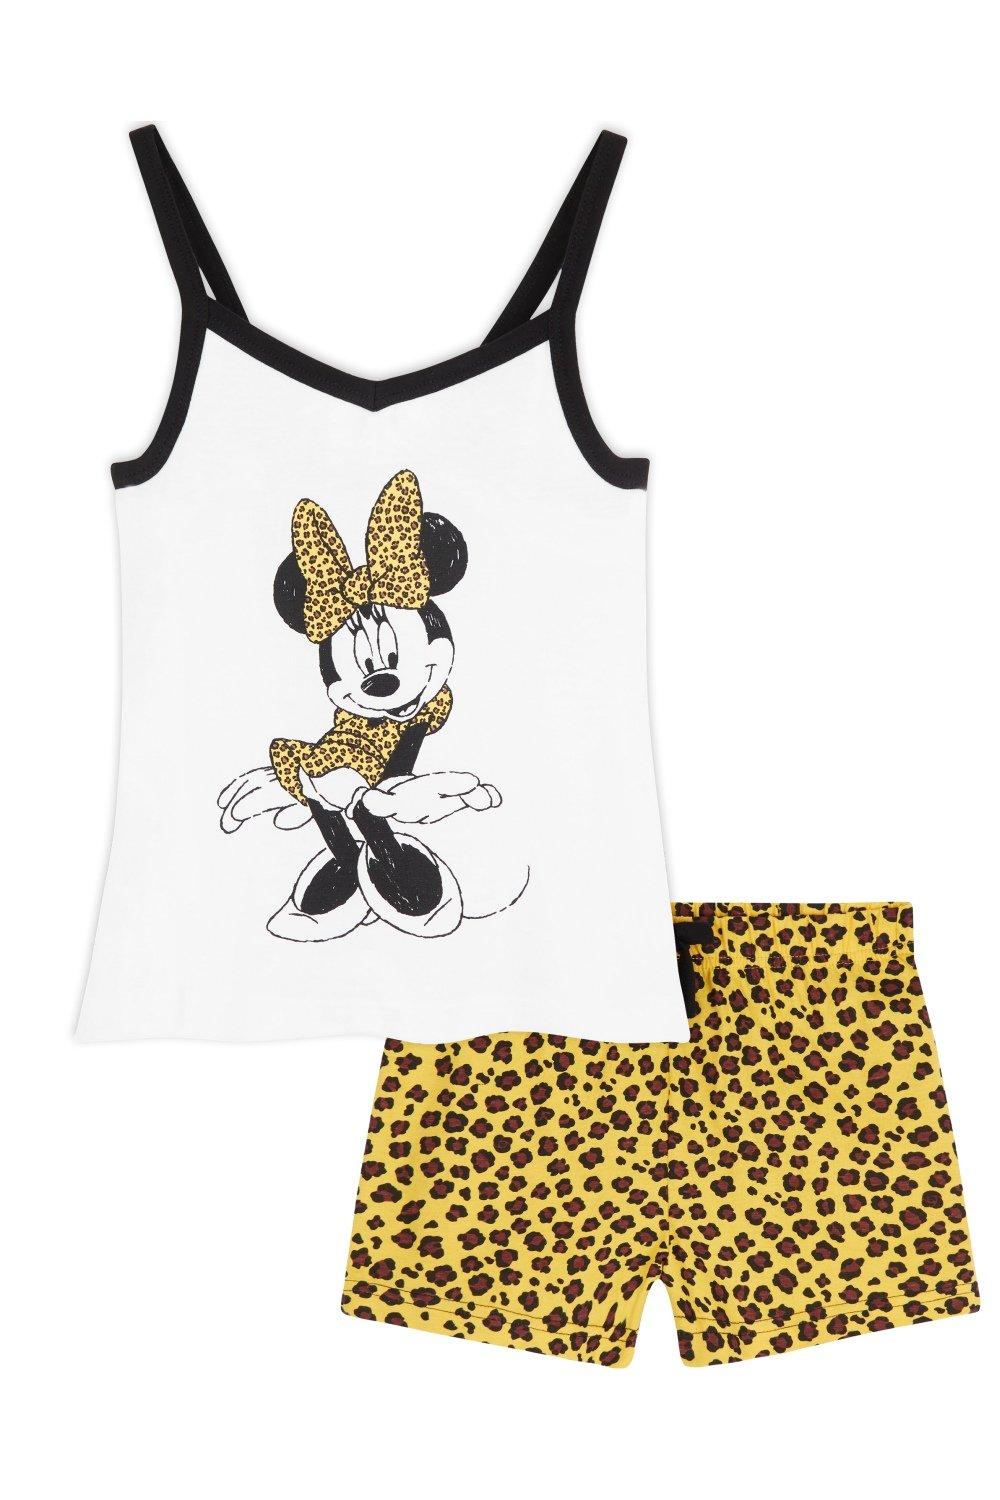 Короткий пижамный комплект с Минни Маус Disney, мультиколор disney маникюрный набор для девочек минни маус